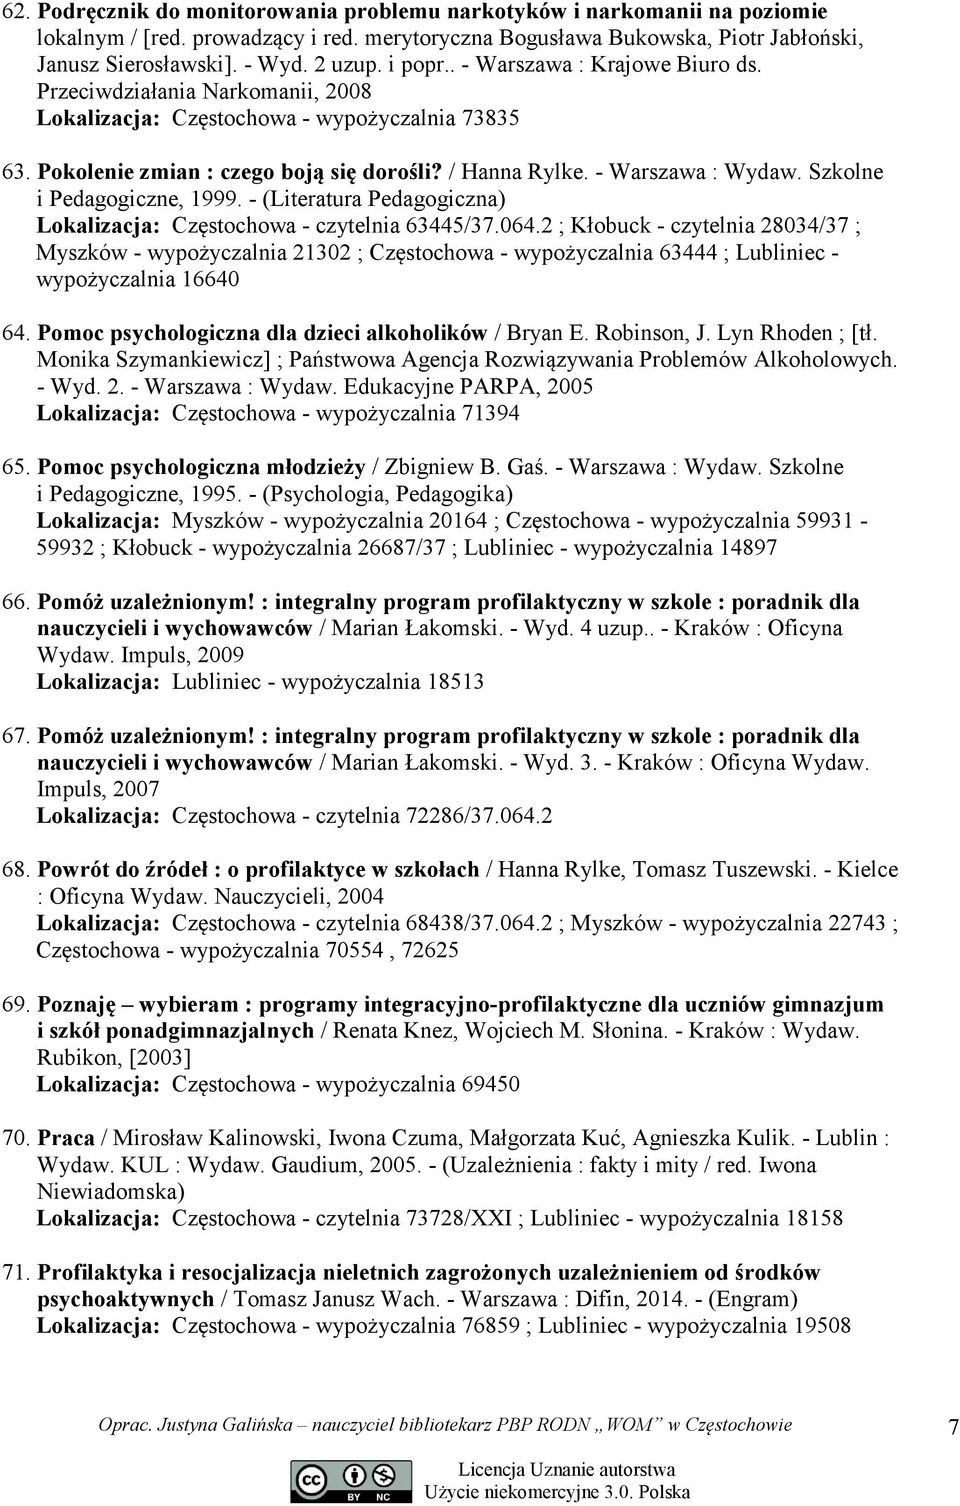 - Warszawa : Wydaw. Szkolne i Pedagogiczne, 1999. - (Literatura Pedagogiczna) Lokalizacja: Częstochowa - czytelnia 63445/37.064.